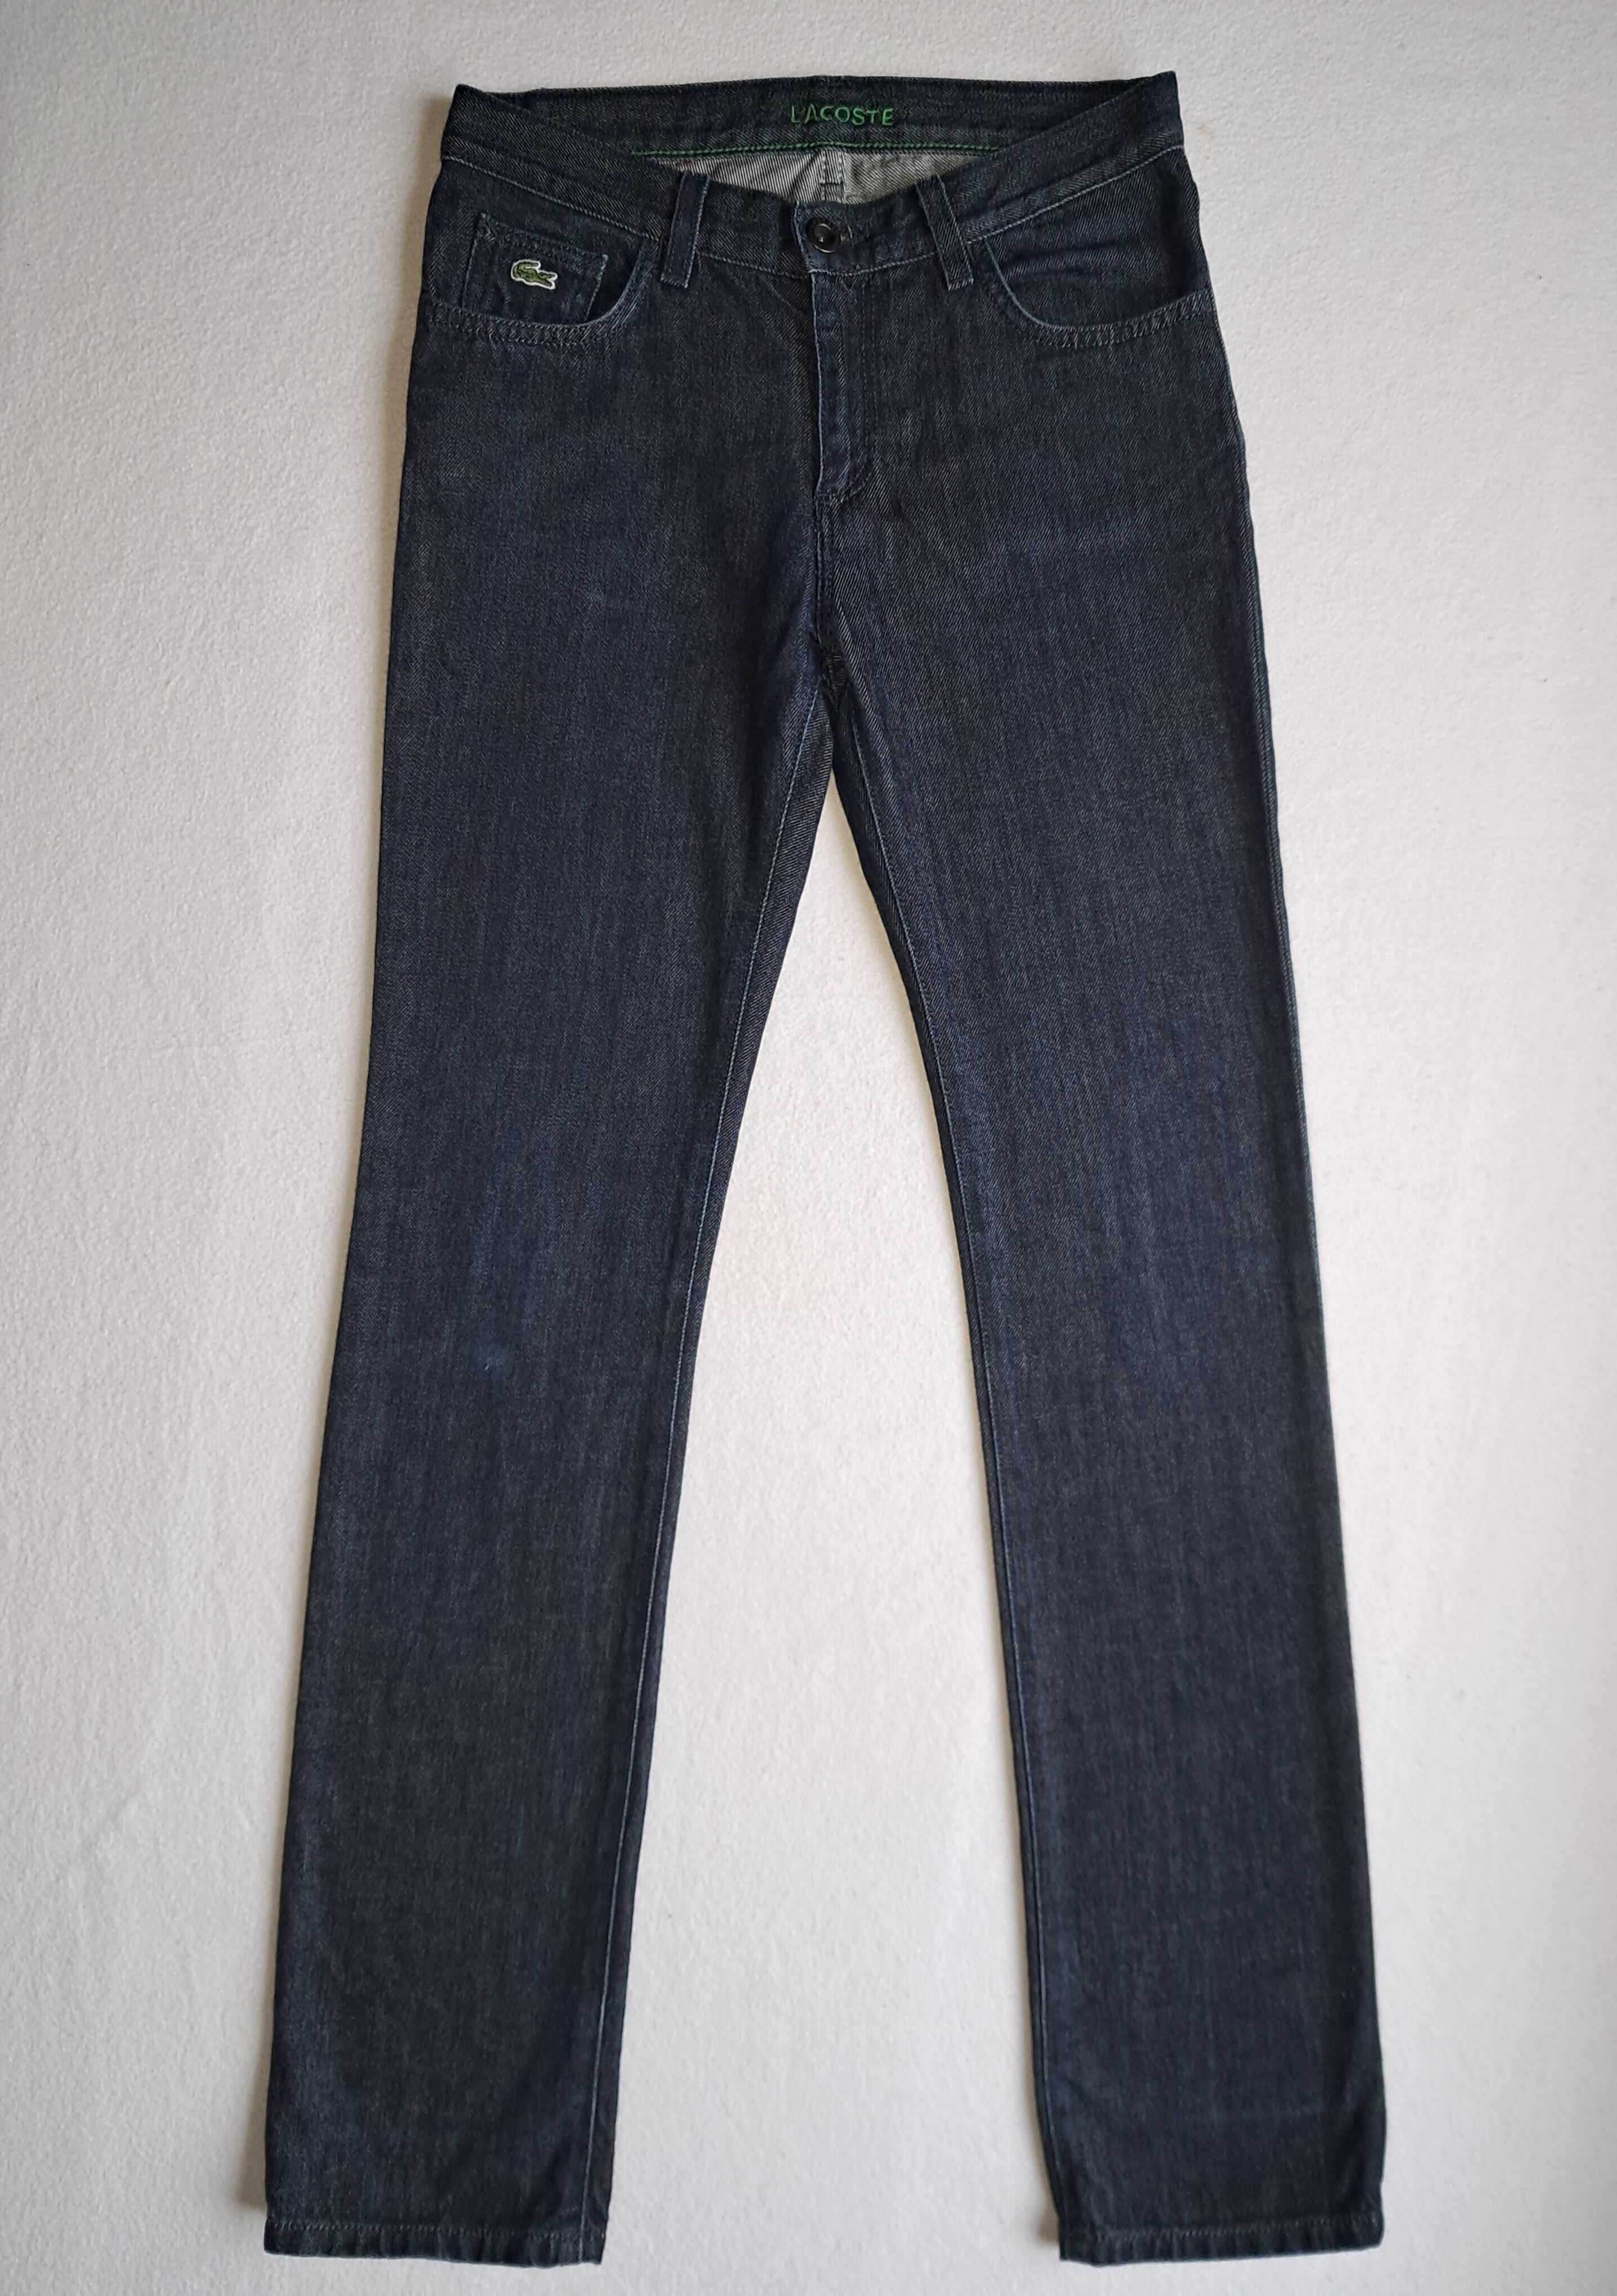 Подростковые тёмно-синие брендовые джинсы Lacoste на мальчика